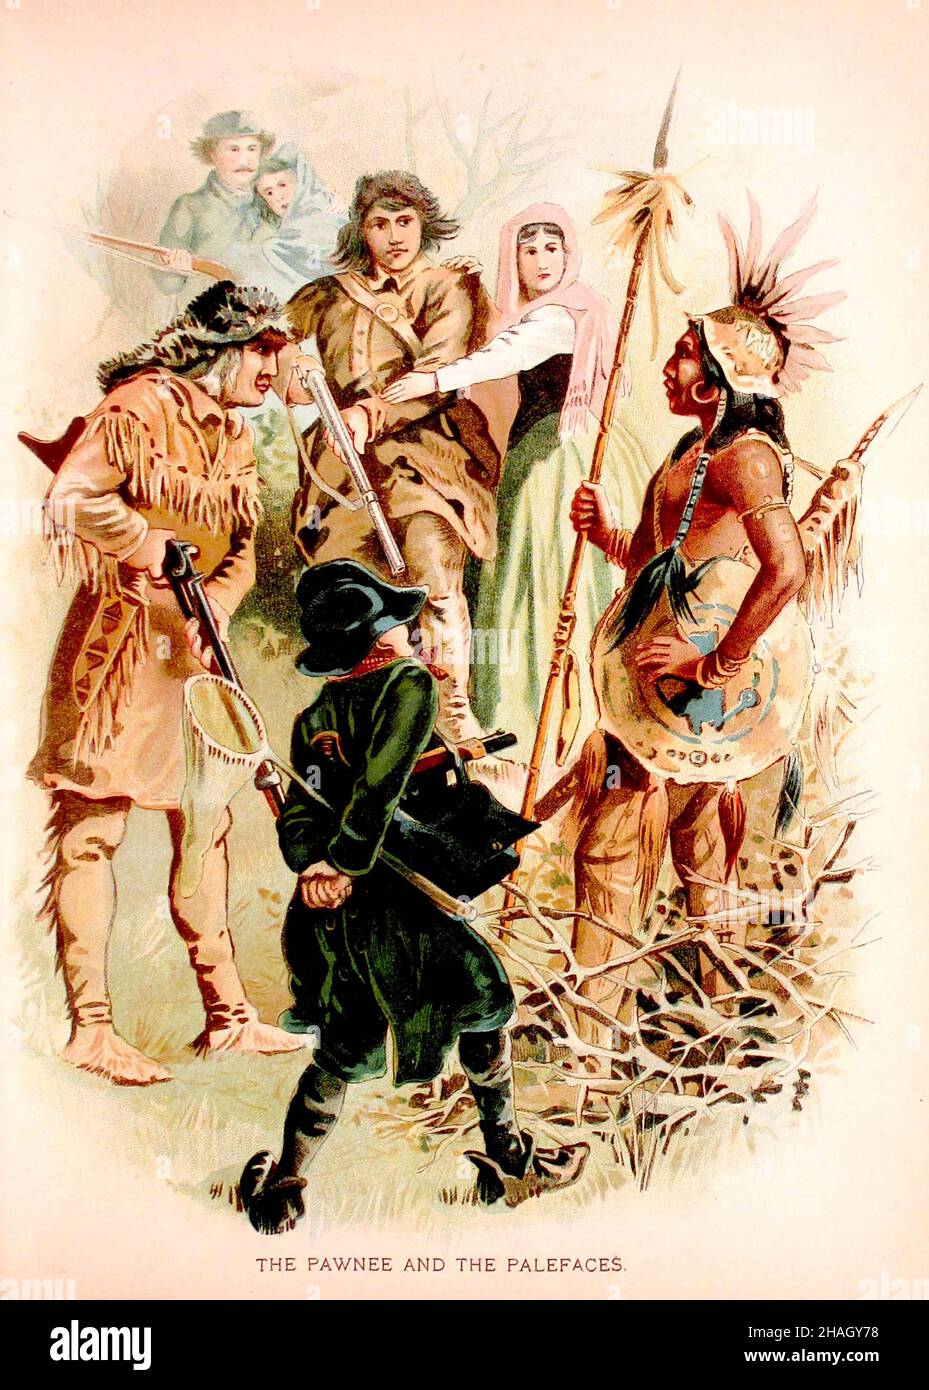 The Pawnee and the Paleface, tiré du livre « Historical Stories of American Pioneer Life » de James Fenimore Cooper; illustré par Michal Elwiro Andriolli et gravé par Edmund Evans publié en 1897 Banque D'Images